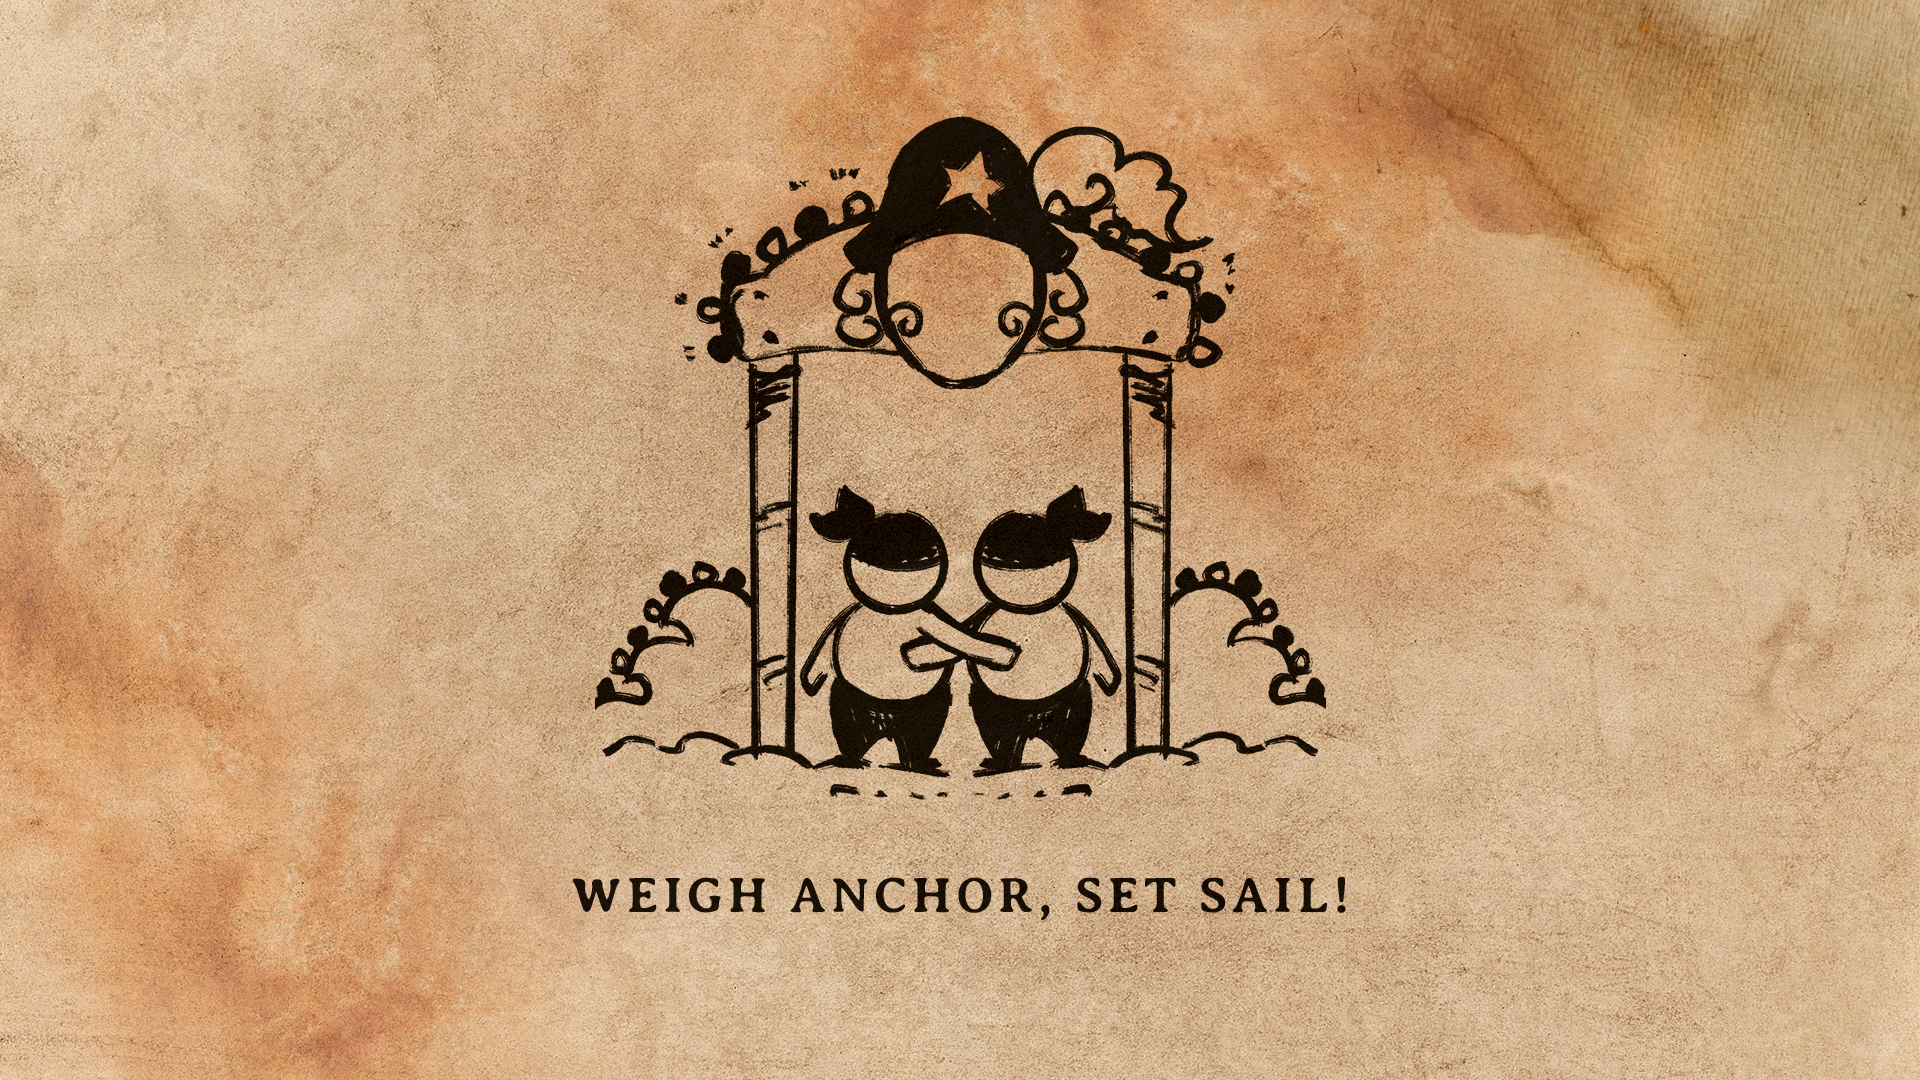 Weigh Anchor, Set Sail!